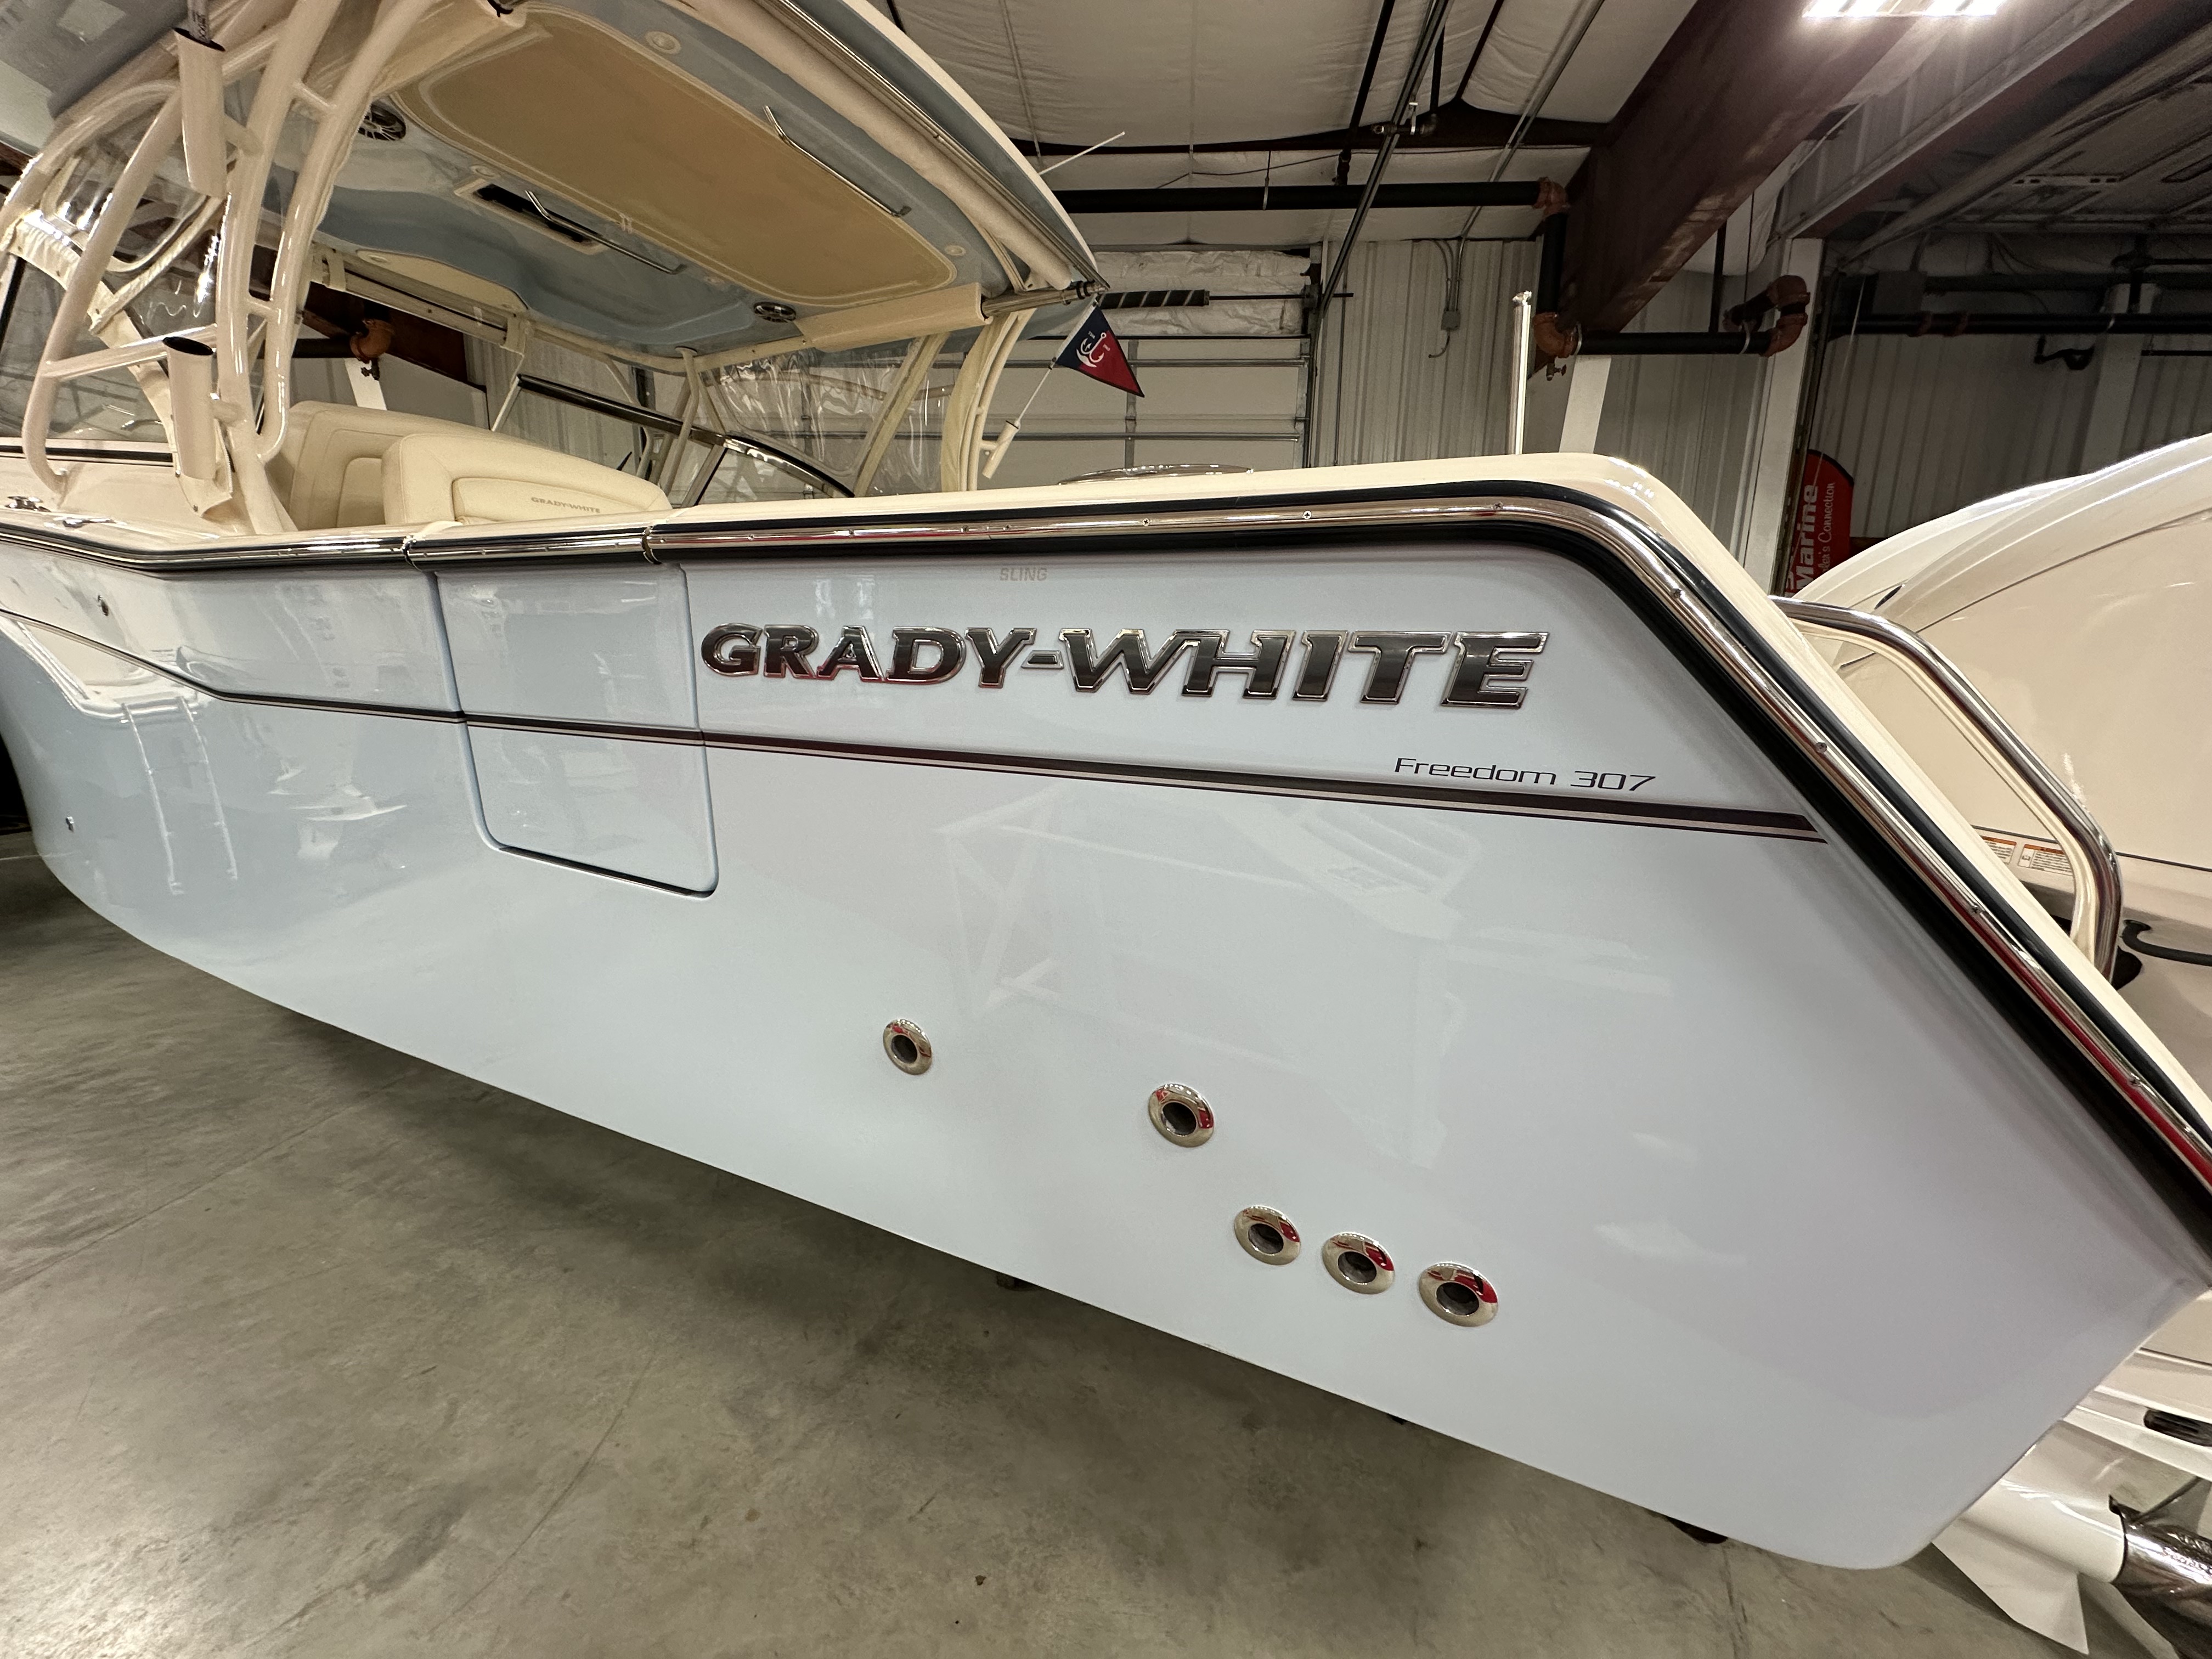 Grady-White 307 Freedom